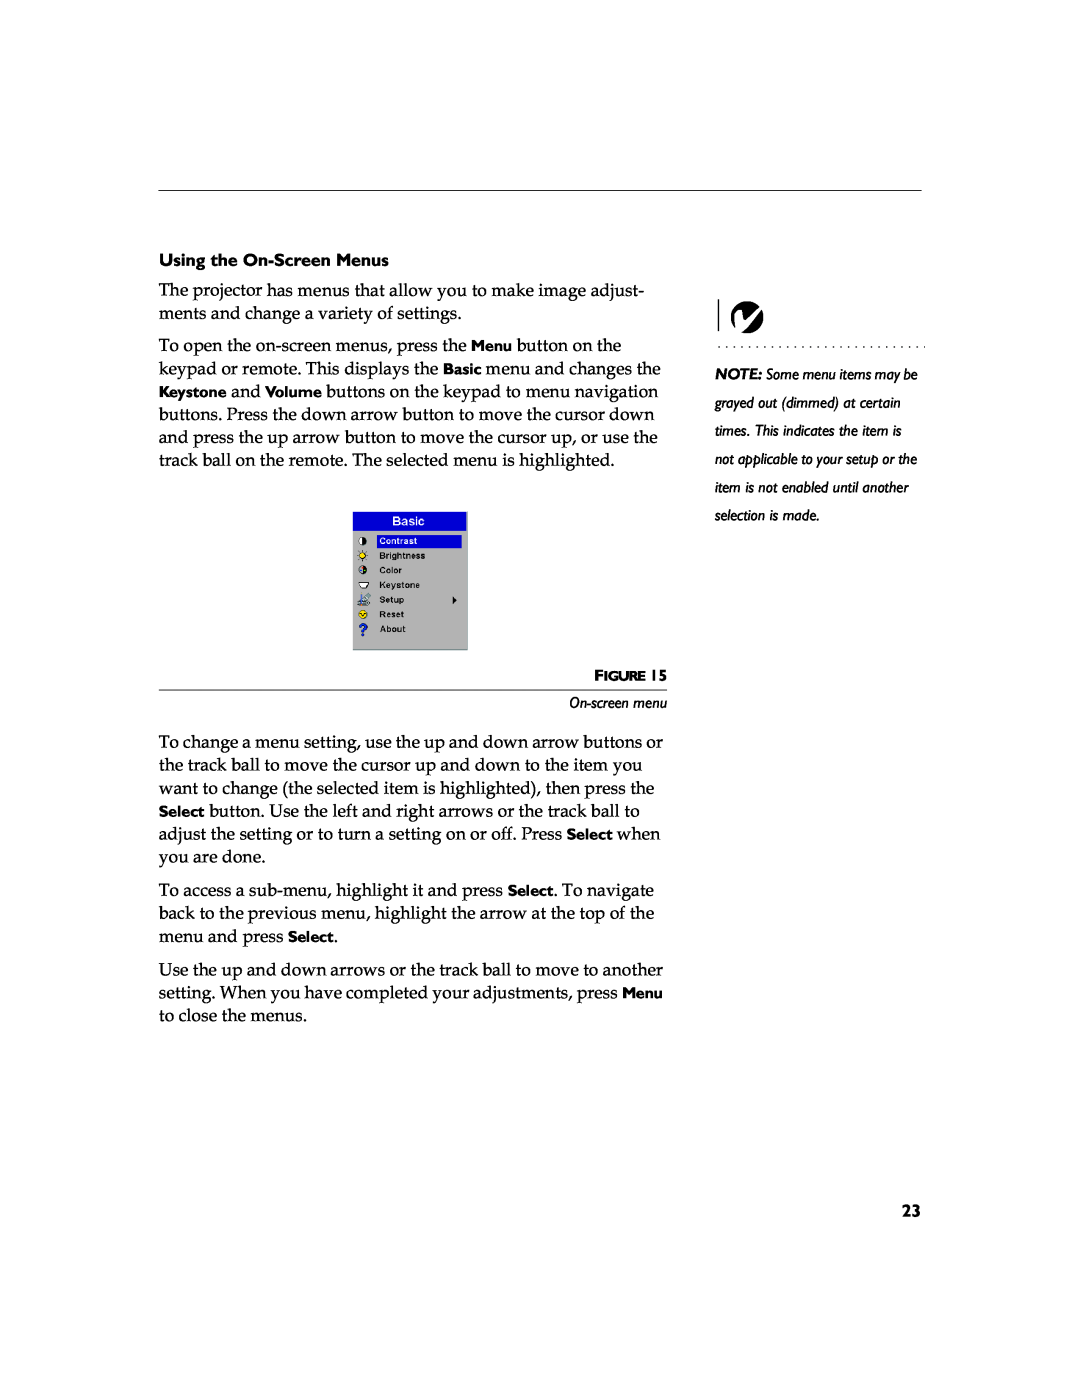 InFocus LP 790 manual Using the On-Screen Menus, On-screen menu 